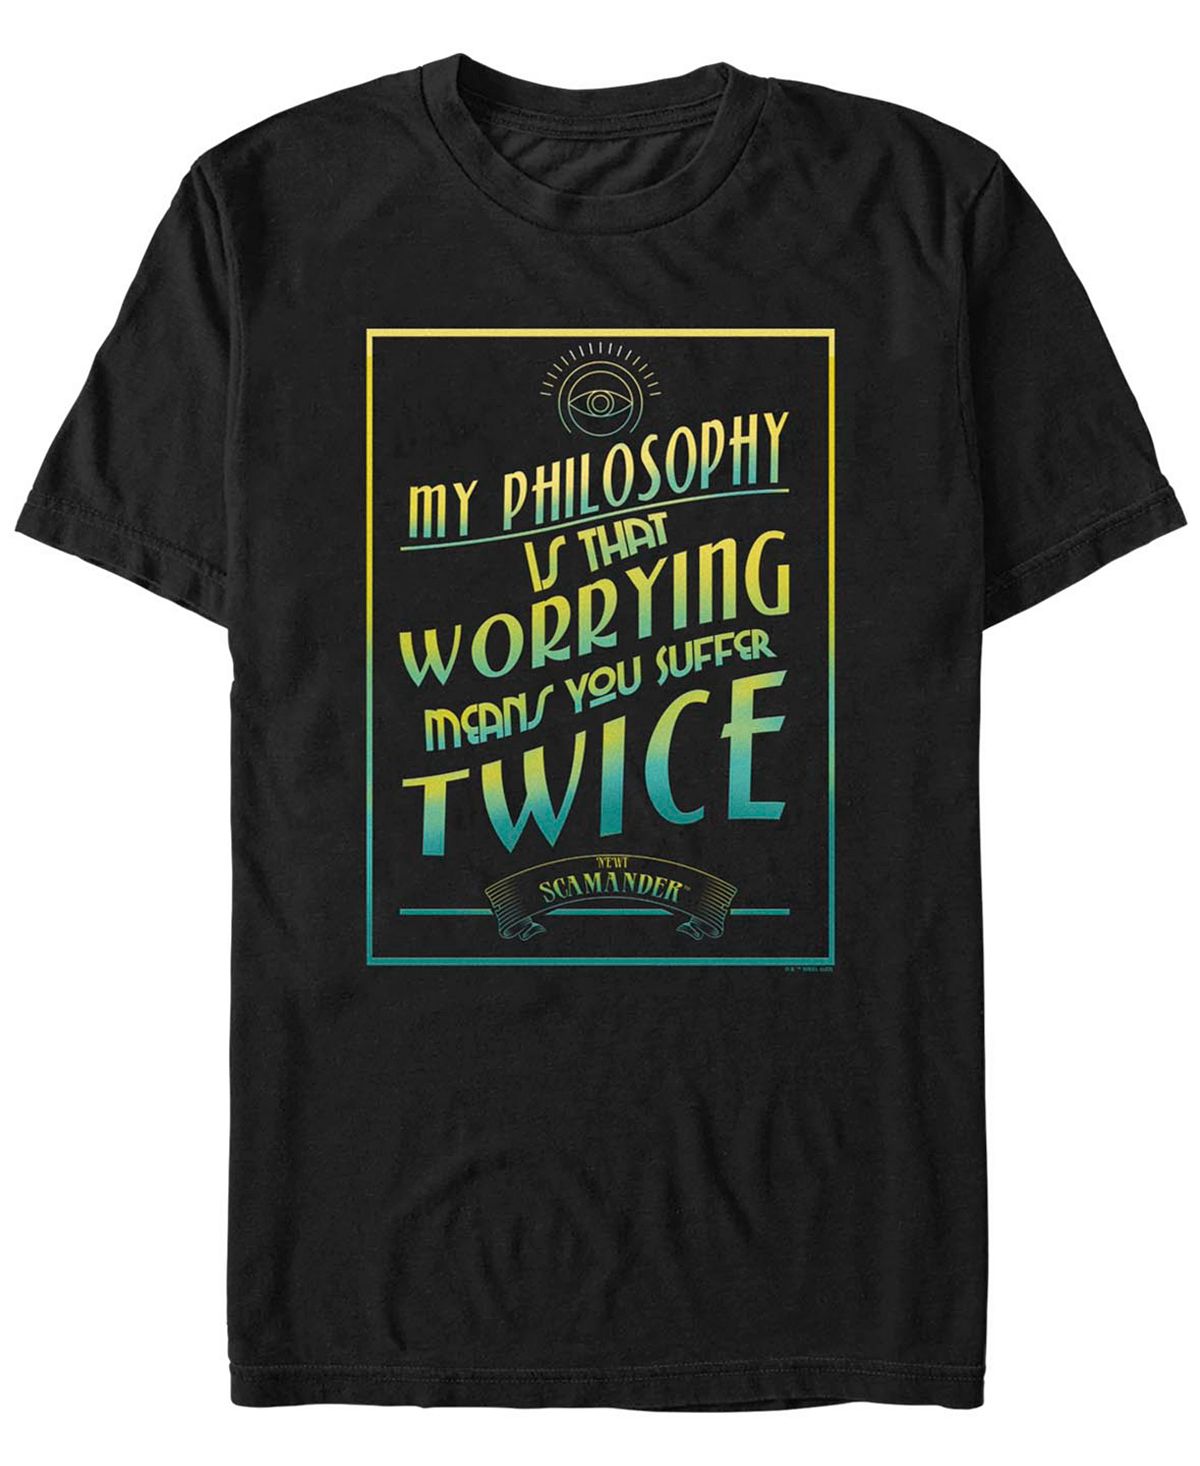 Мужская футболка с коротким рукавом «фантастические твари и где они обитают» newt's philosophy Fifth Sun, черный